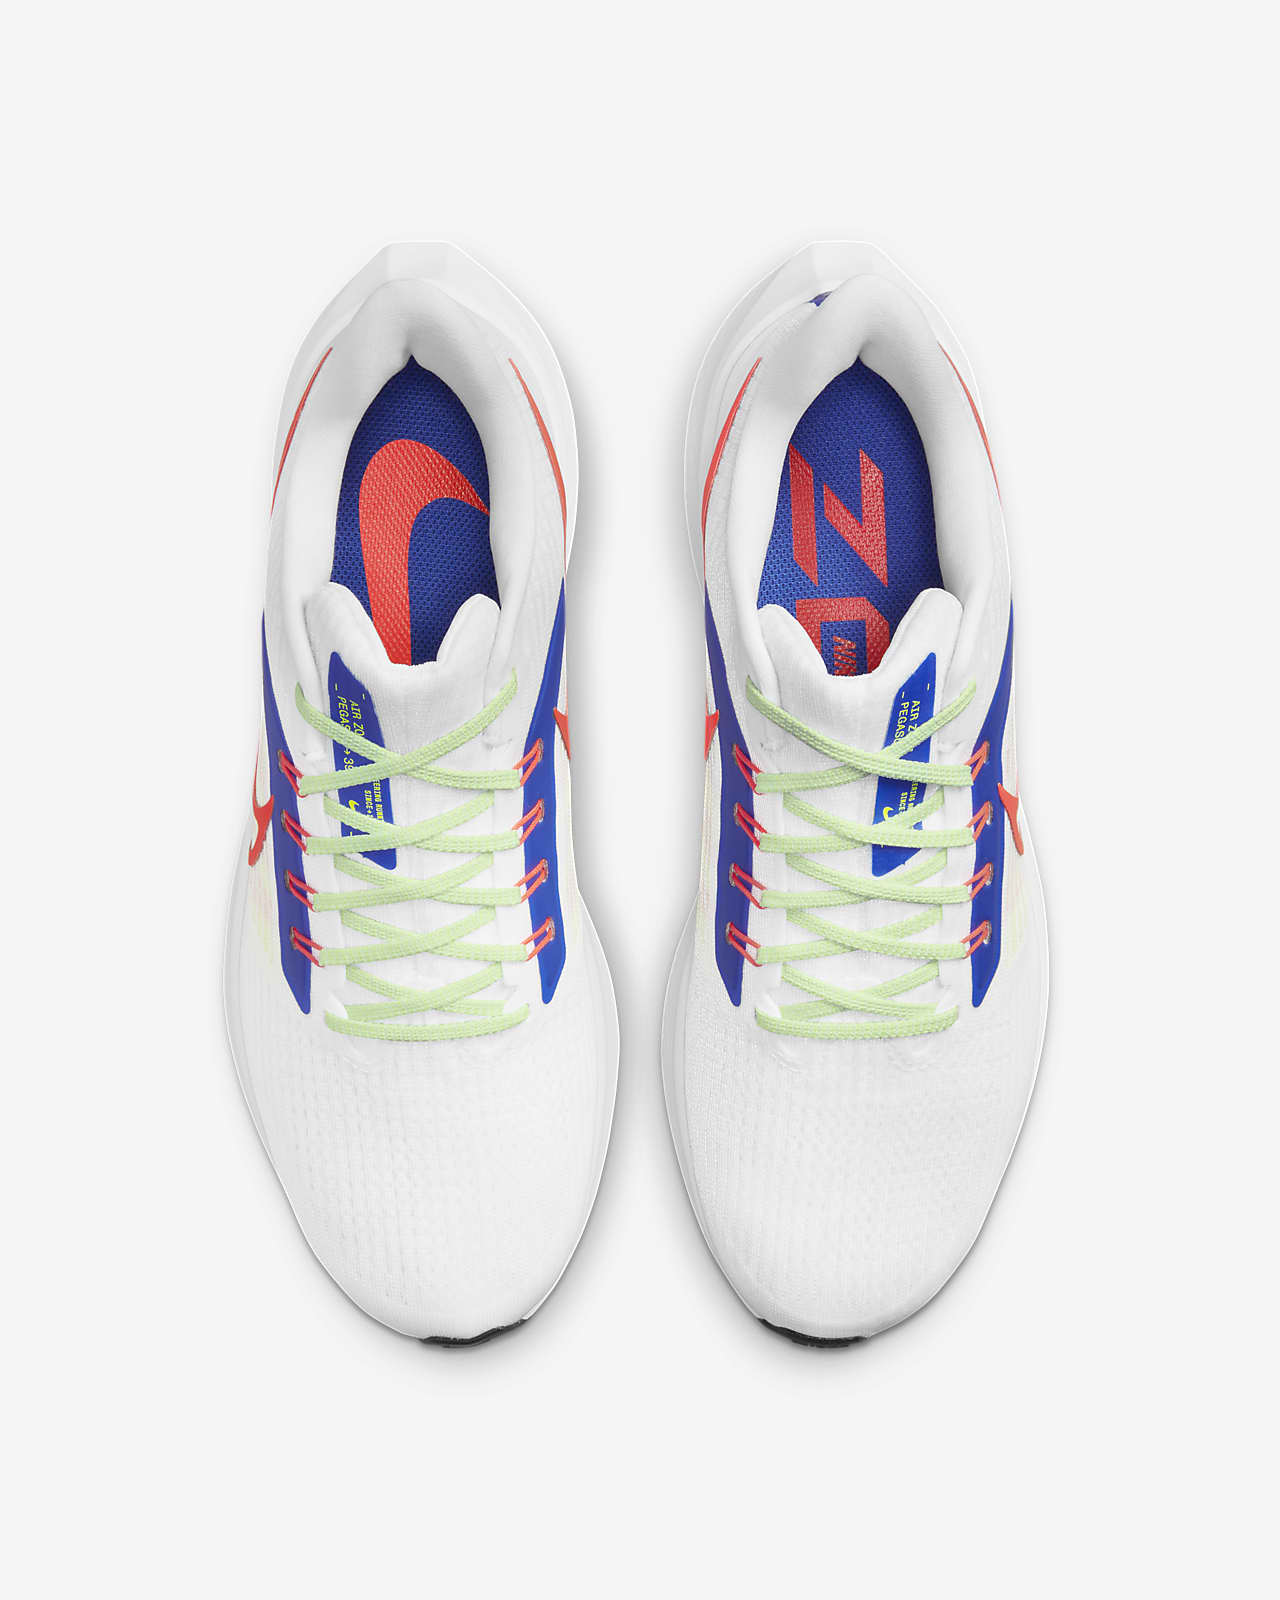 Nike Air Zoom Pegasus 39 Men's Road Running Shoes